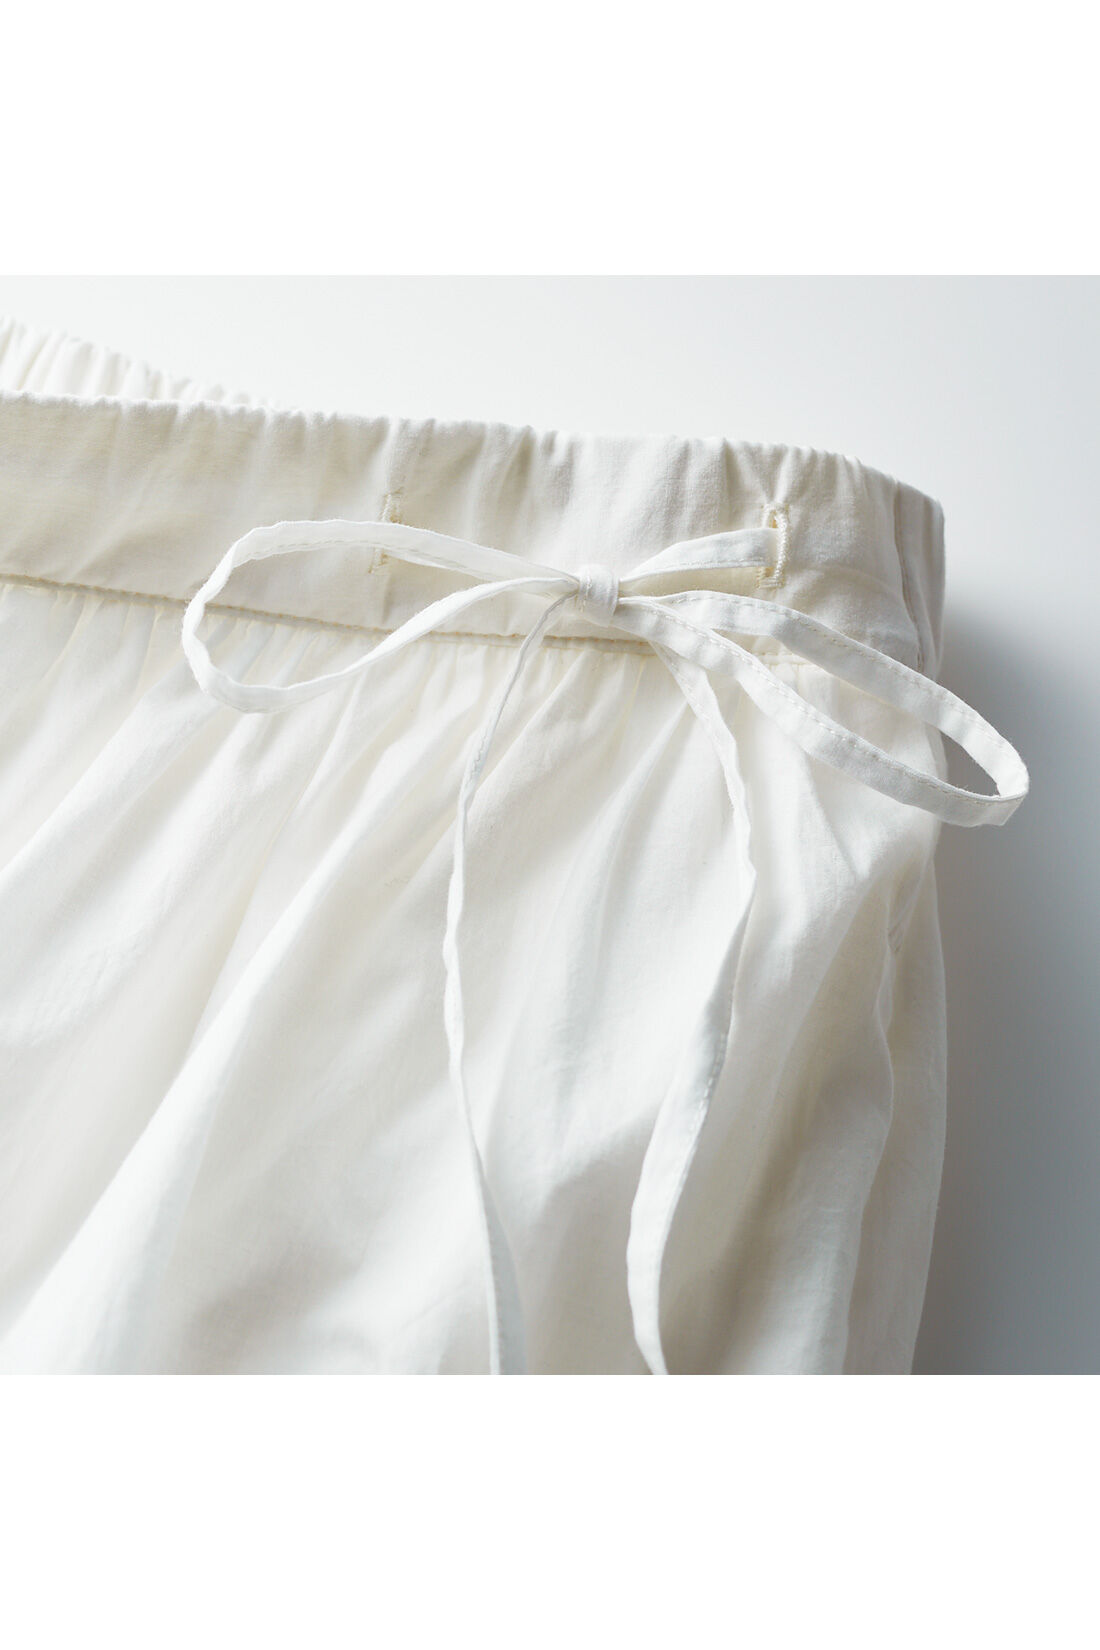 THREE FIFTY STANDARD|THREE FIFTY STANDARD 金子敦子さんと作った 真っ白なギャザースカート|リボン　着こなしのアクセントになる、さりげないサイドリボン。